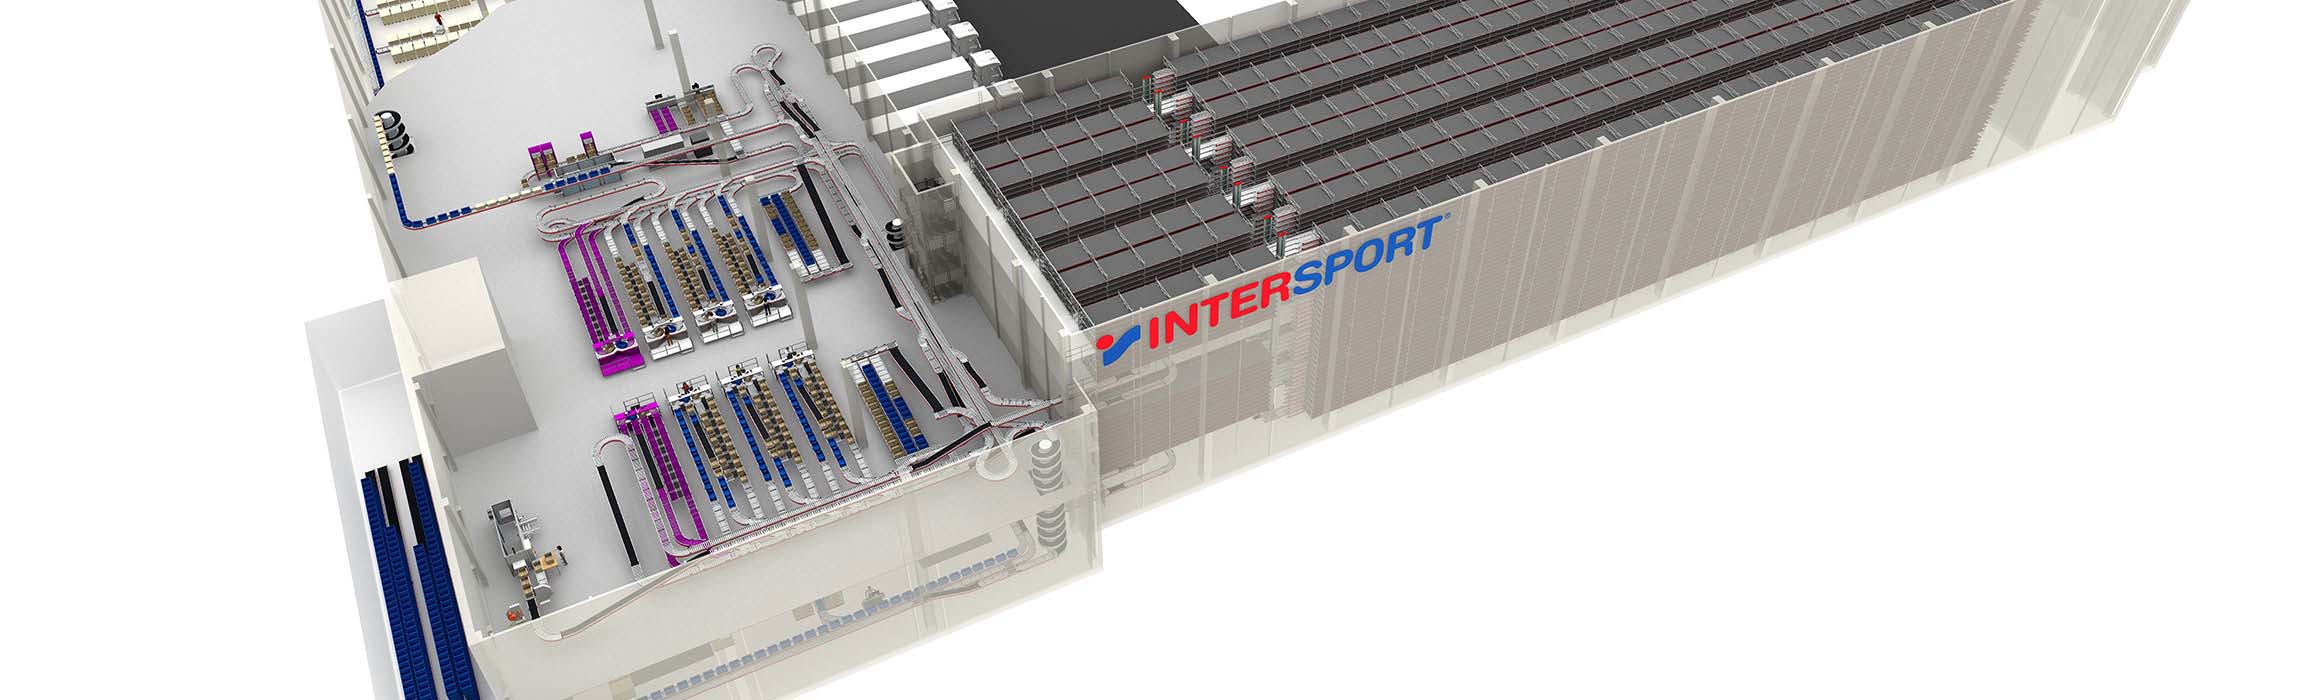 Intersport steigert Performance und Effizienz mit TGW.